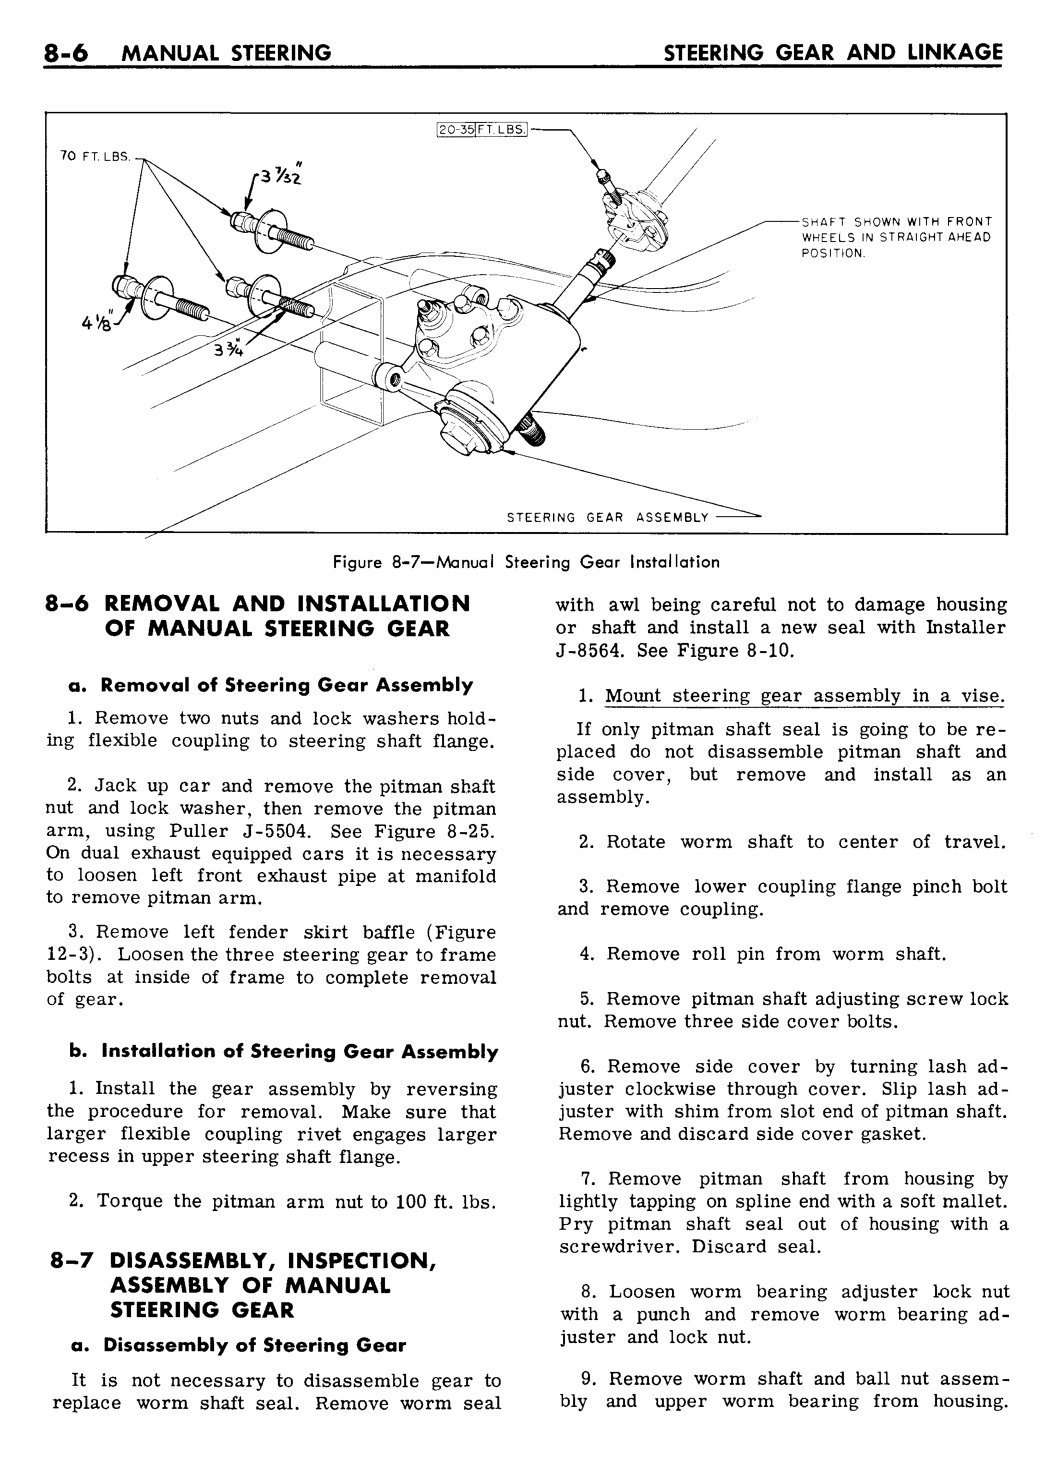 n_08 1961 Buick Shop Manual - Steering-006-006.jpg